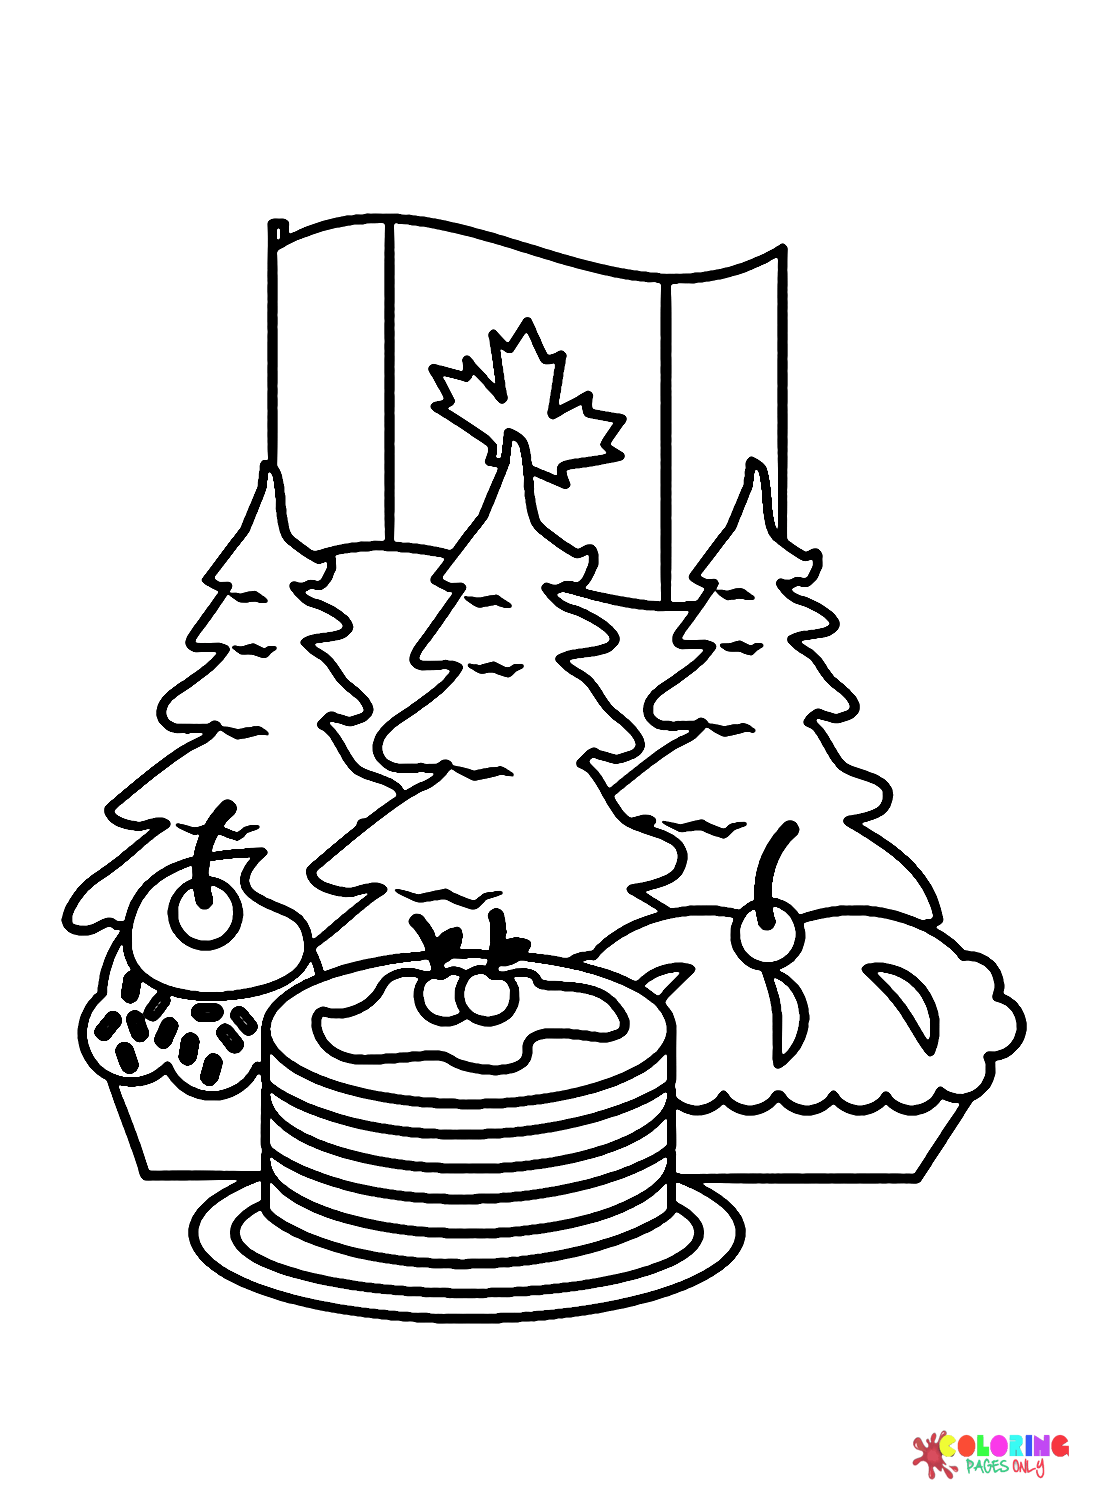 الأشجار مع الكعكة والعلم في يوم كندا من يوم كندا